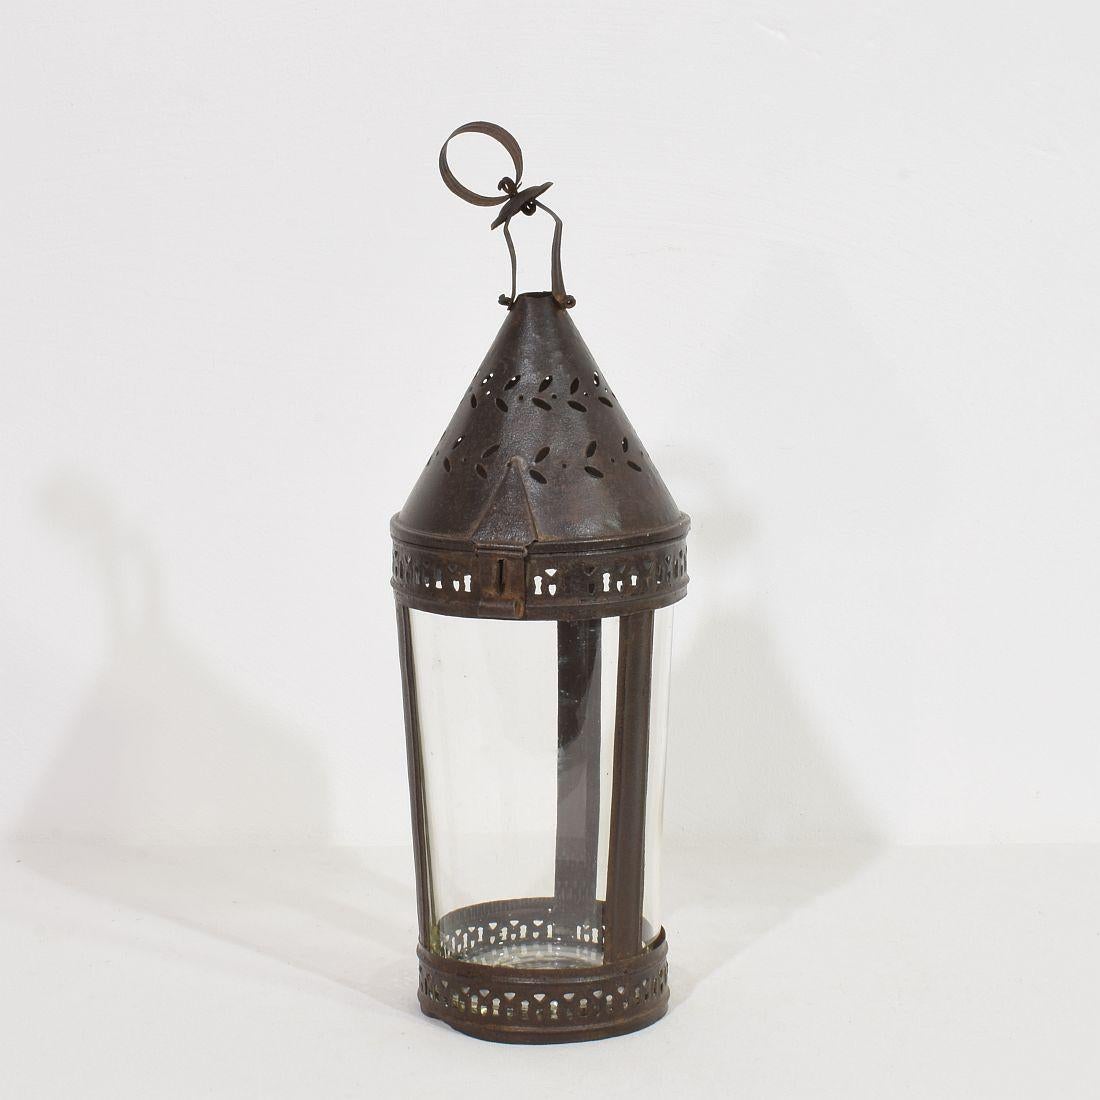 Très rare  Lanterne d'art populaire, France, vers 1800-1850.

Magnifique, avec les intempéries. Le verre est ancien mais, à mon avis, plus récent.